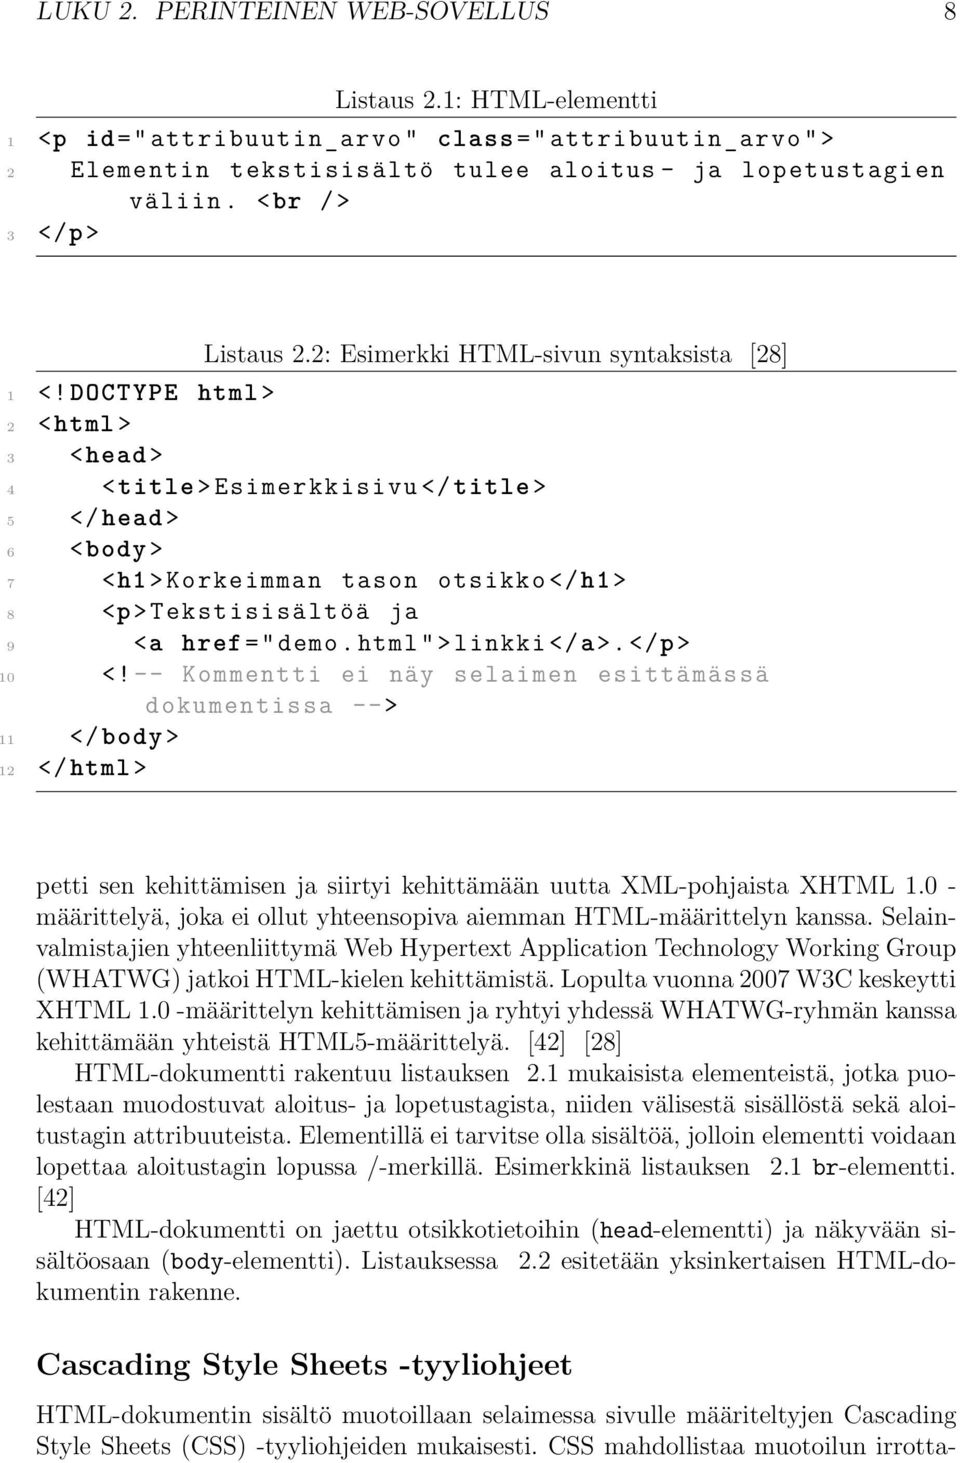 2: Esimerkki HTML-sivun syntaksista [28] 4 <title > Esimerkkisivu </title > 5 </head > 6 <body > 7 <h1 > Korkeimman tason otsikko </ h1 > 8 <p > Tekstisisältöä ja 9 <a href =" demo.